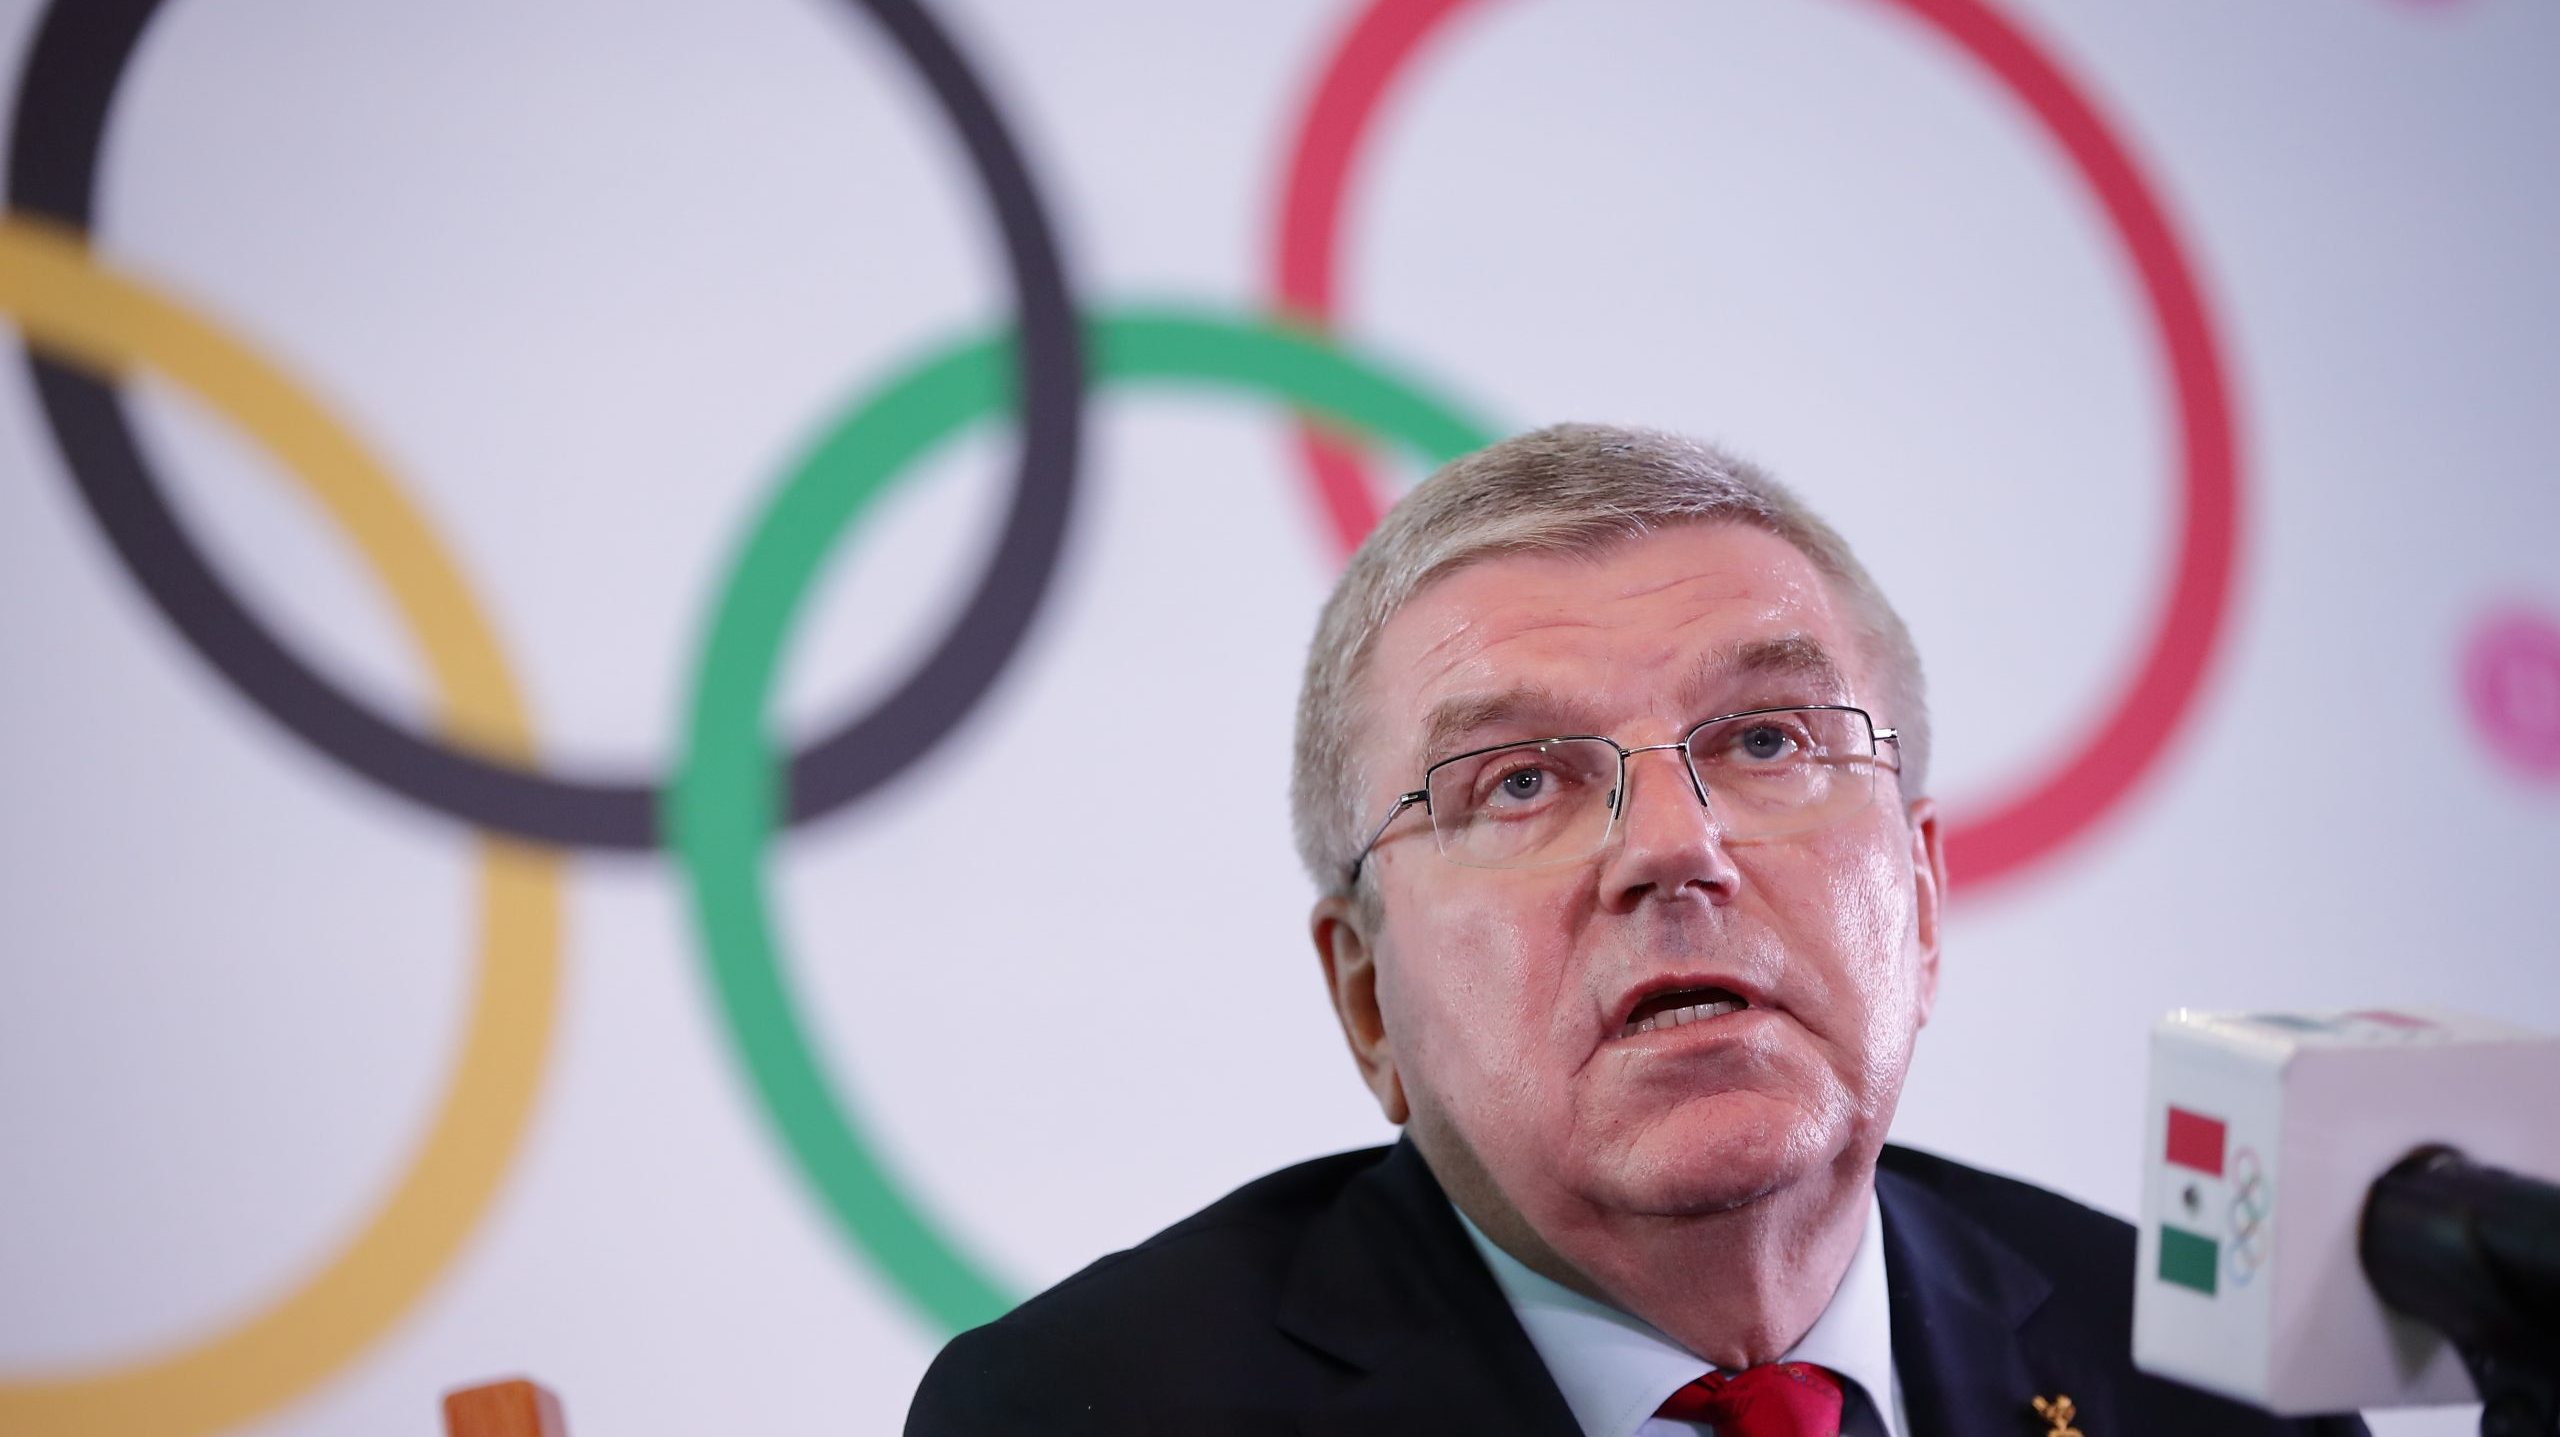 De acordo com a delegação portuguesa, o líder do Comité Olímpico Internacional intercedeu junto de Marcelo Rebelo de Sousa para que se concretize a vacinação dos atletas portugueses